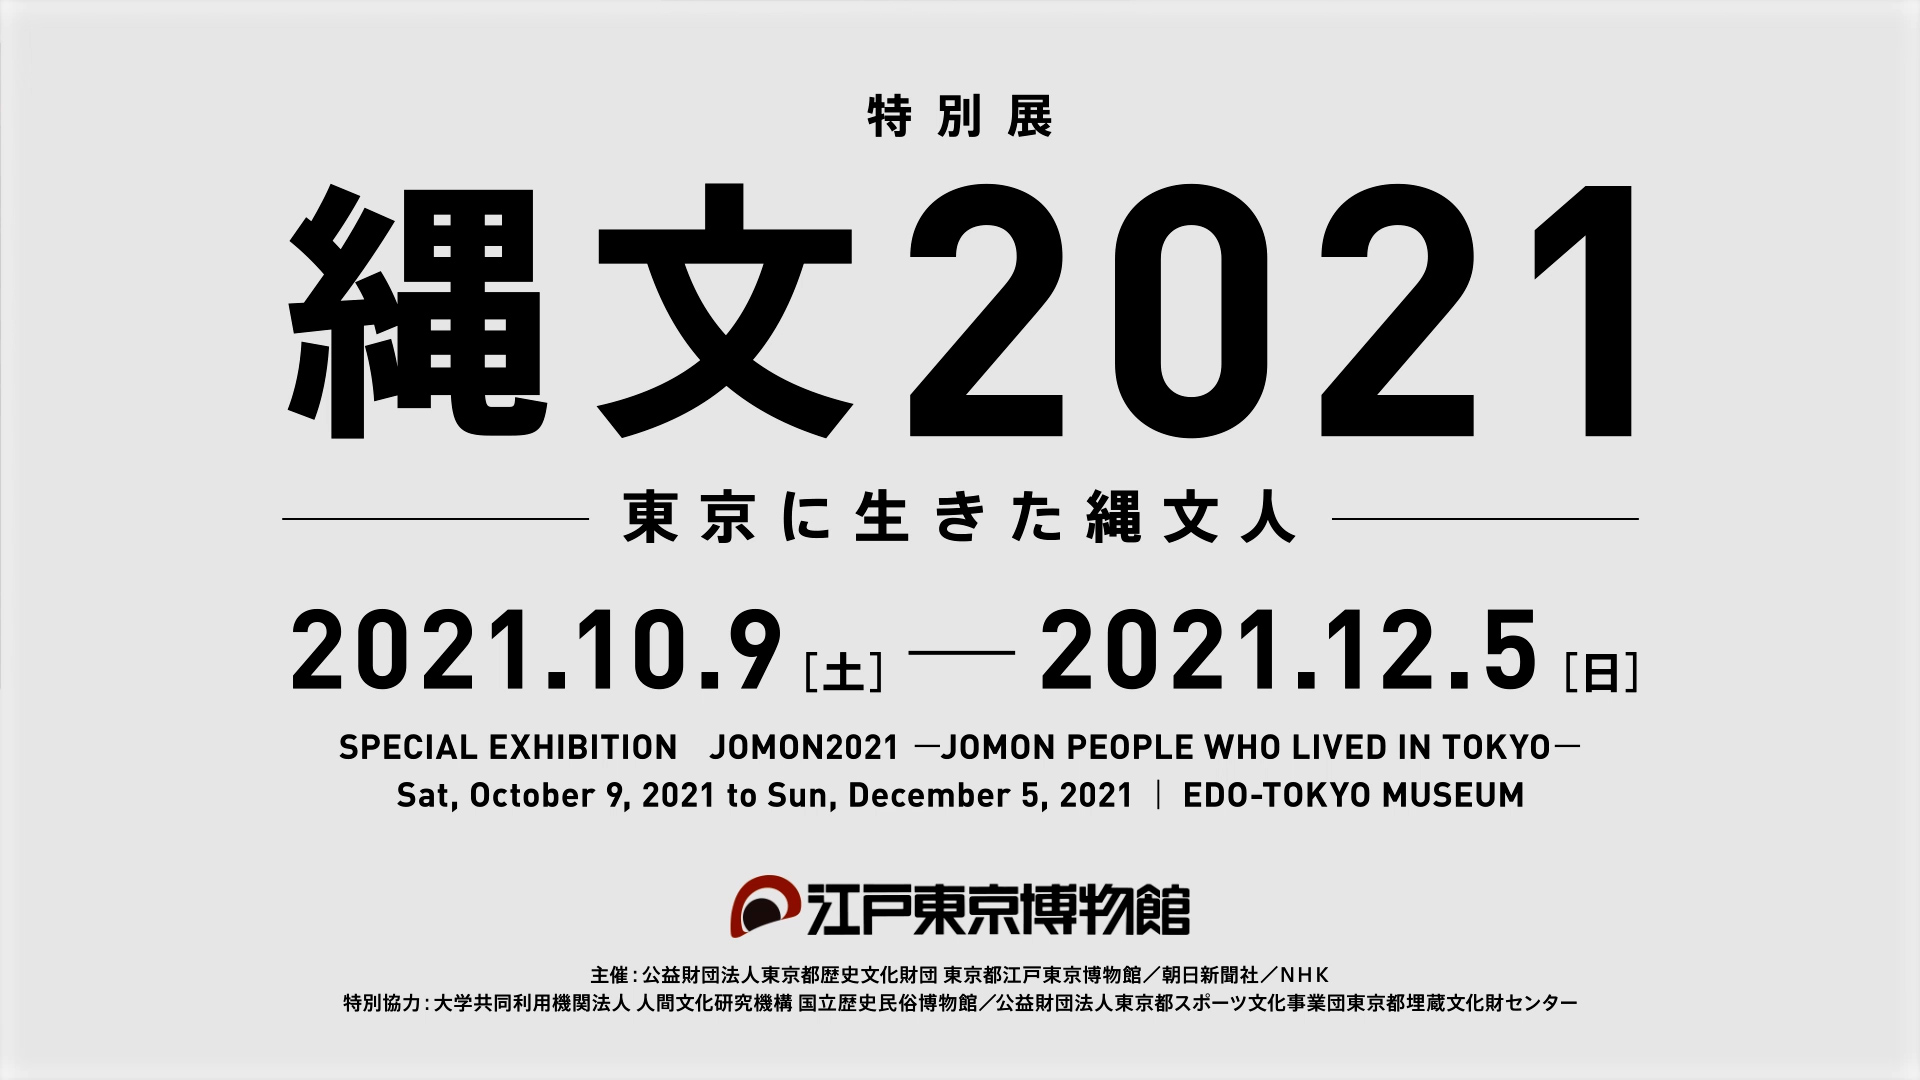 江戸東京博物館 特別展 「縄文2021」PR動画【江戸編】